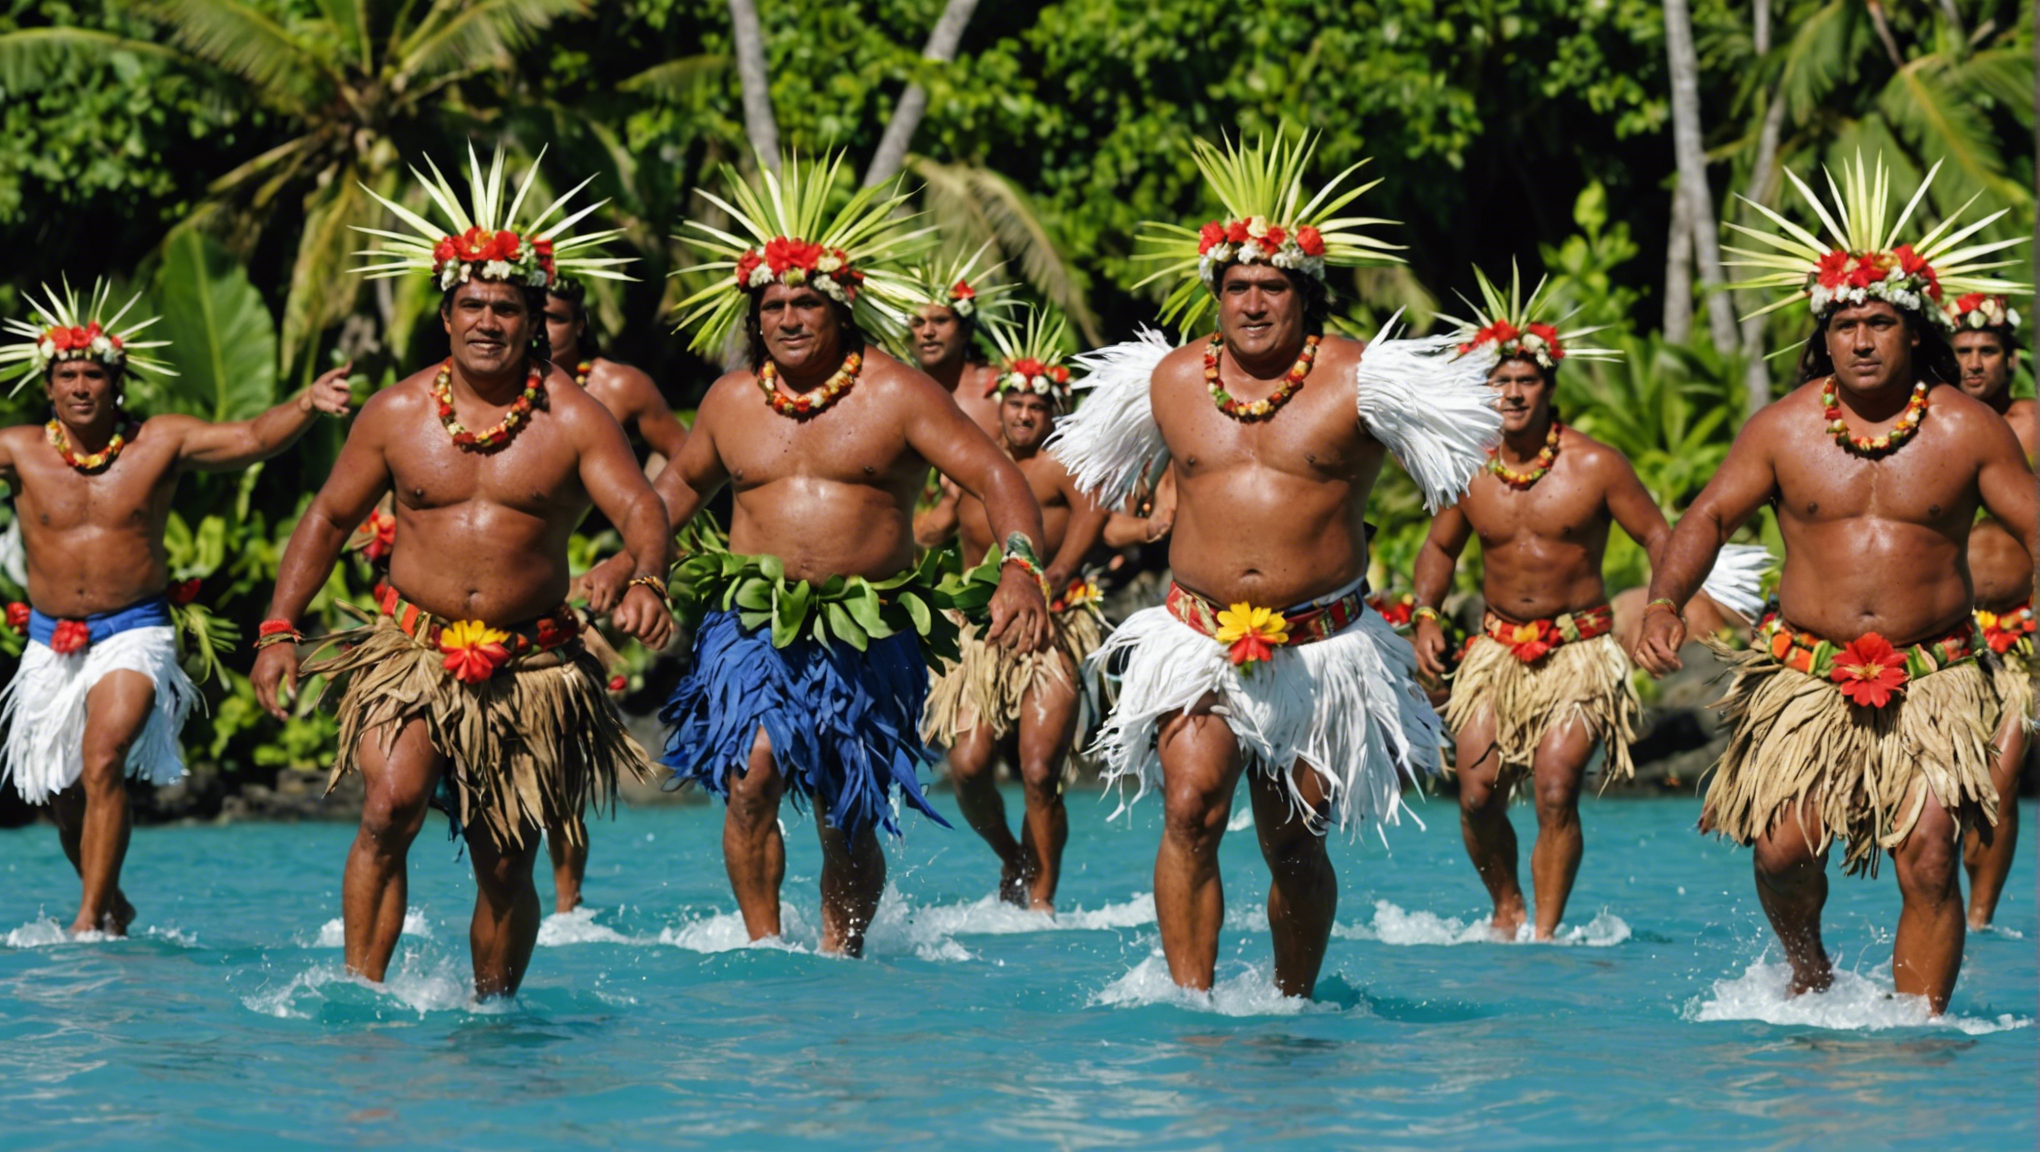 découvrez les festivités traditionnelles qui animent les îles polynésiennes, à travers un voyage authentique à tahiti.